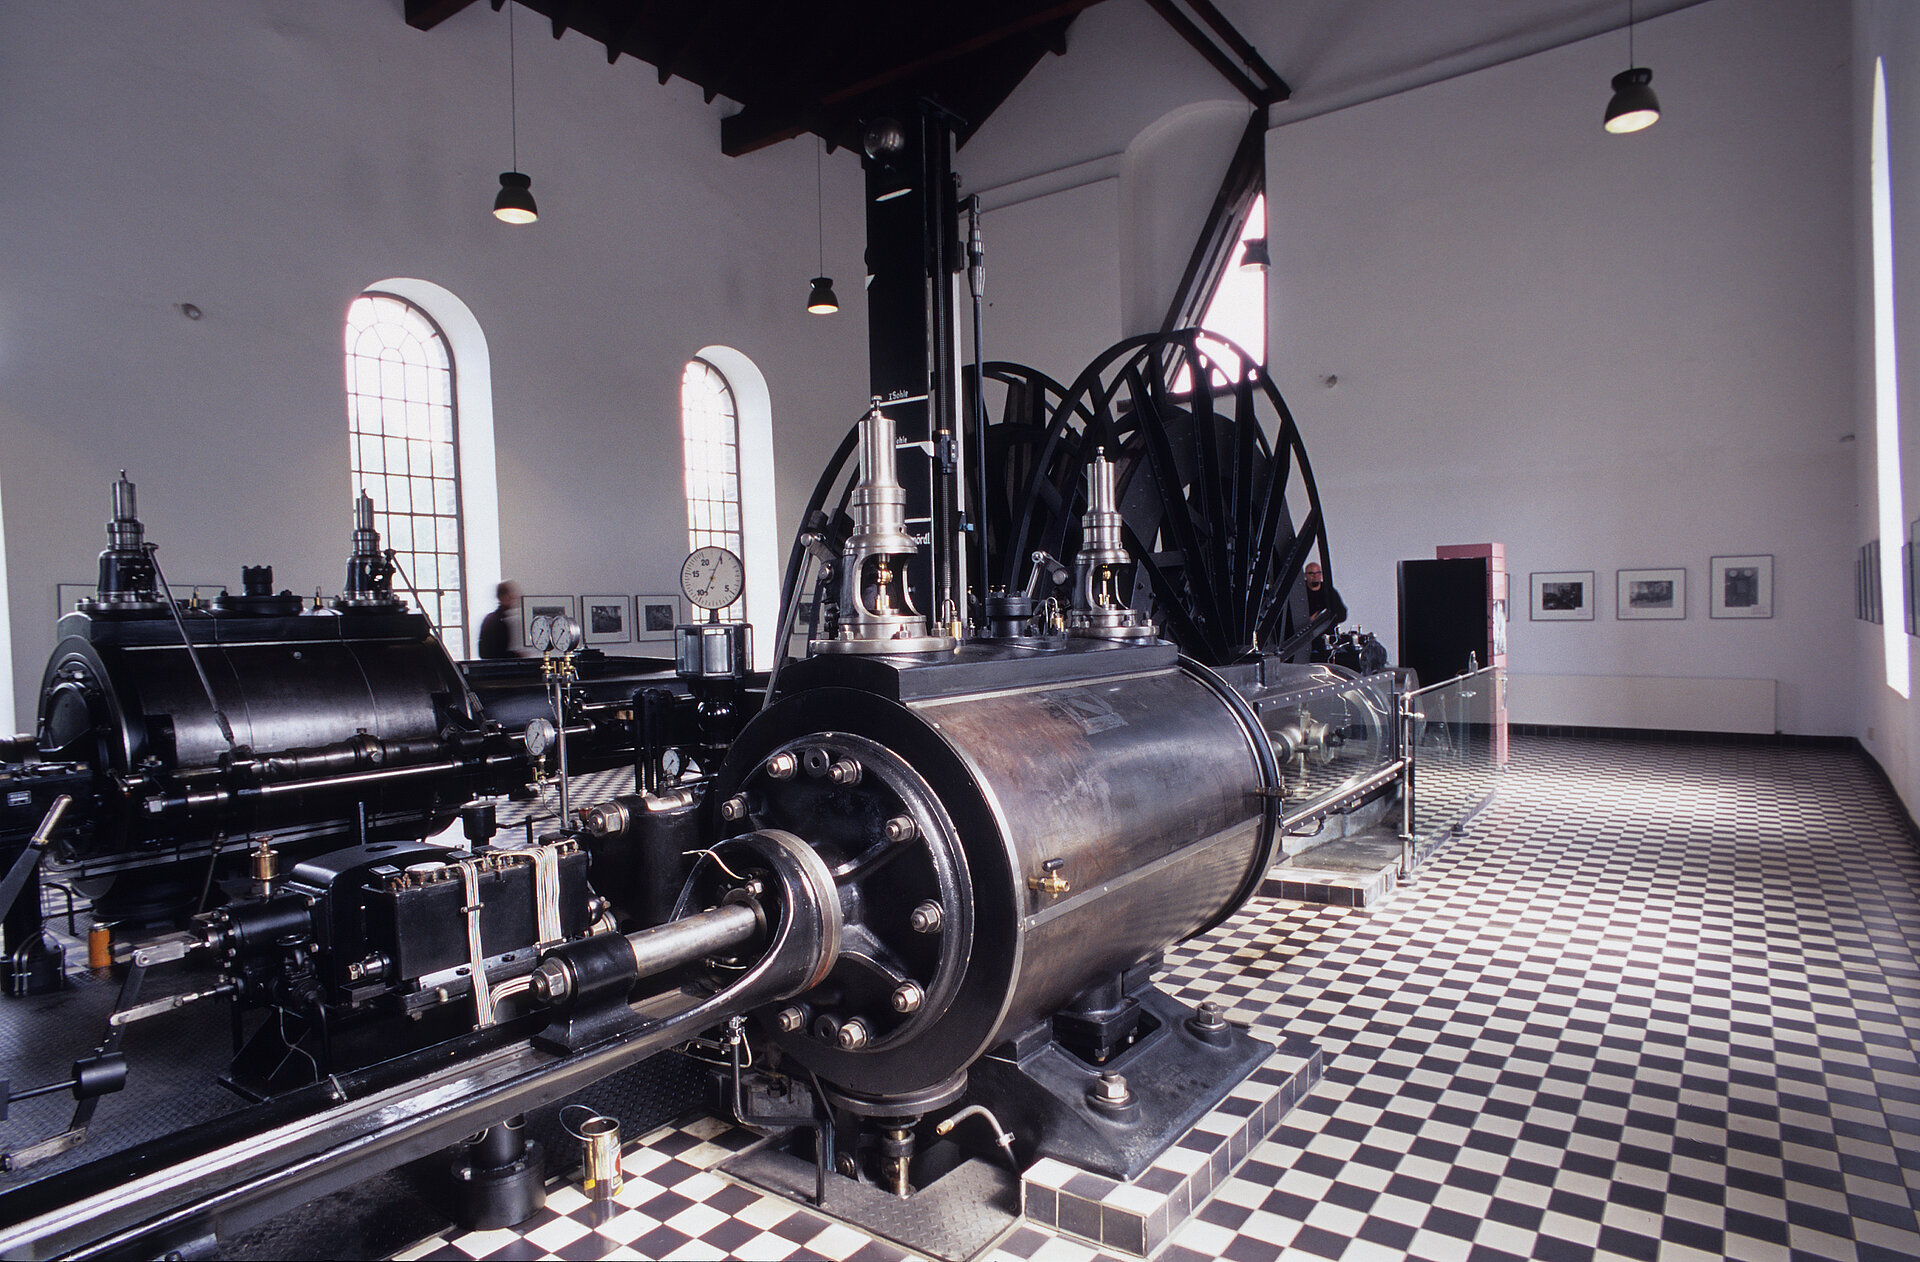 Historische Dampfmaschine mit zwei Zylindern